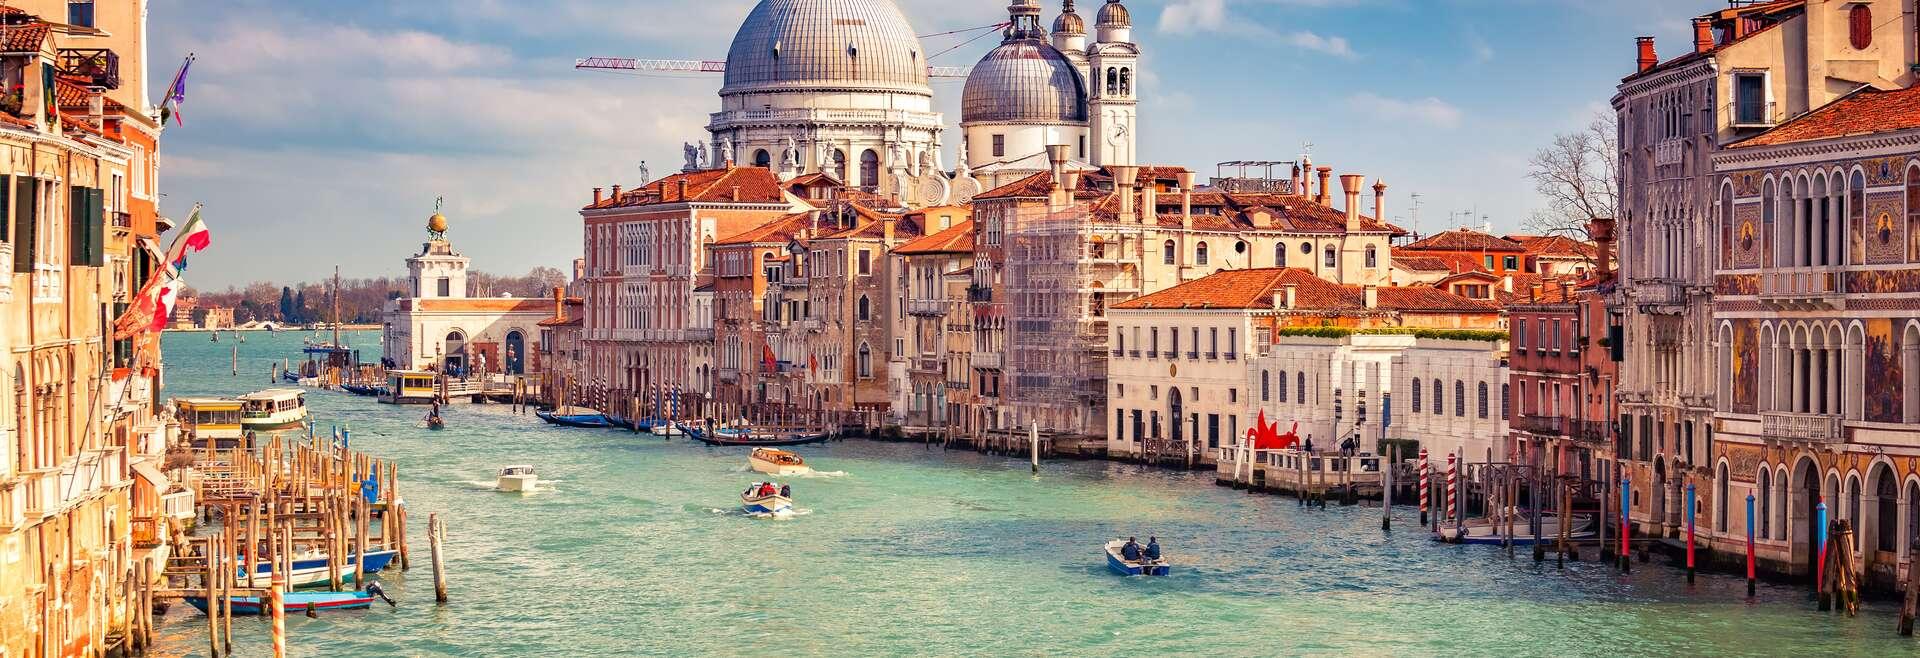 Séjour linguistique Italie, Venise, Canale Grande